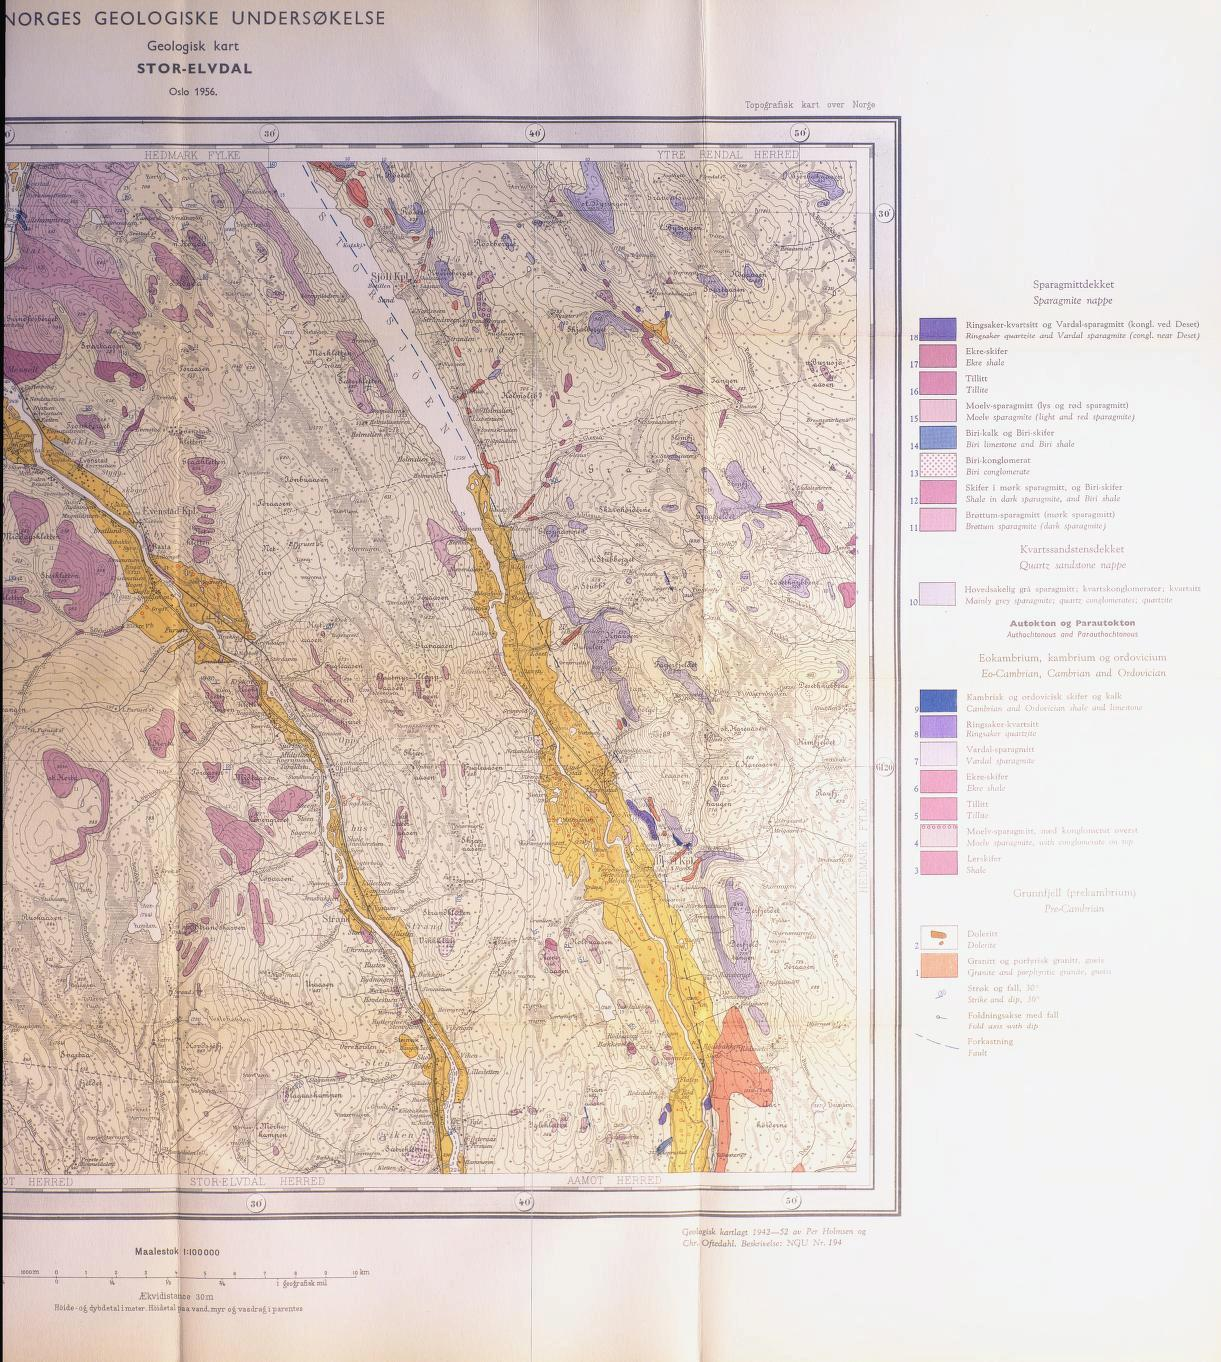 ORGES GEOLOGISKE UNDERSØKELSE Geologisk kart STOR-ELVDAL Oslo 1956. Topografisk kart over Norge I I > i 1 > J % 1 \^ 1 h j *. f "^m /' 1 LI - ] ' _ *-T.'"SS * - MM - -V ' -f- '. ^^^_ 1.